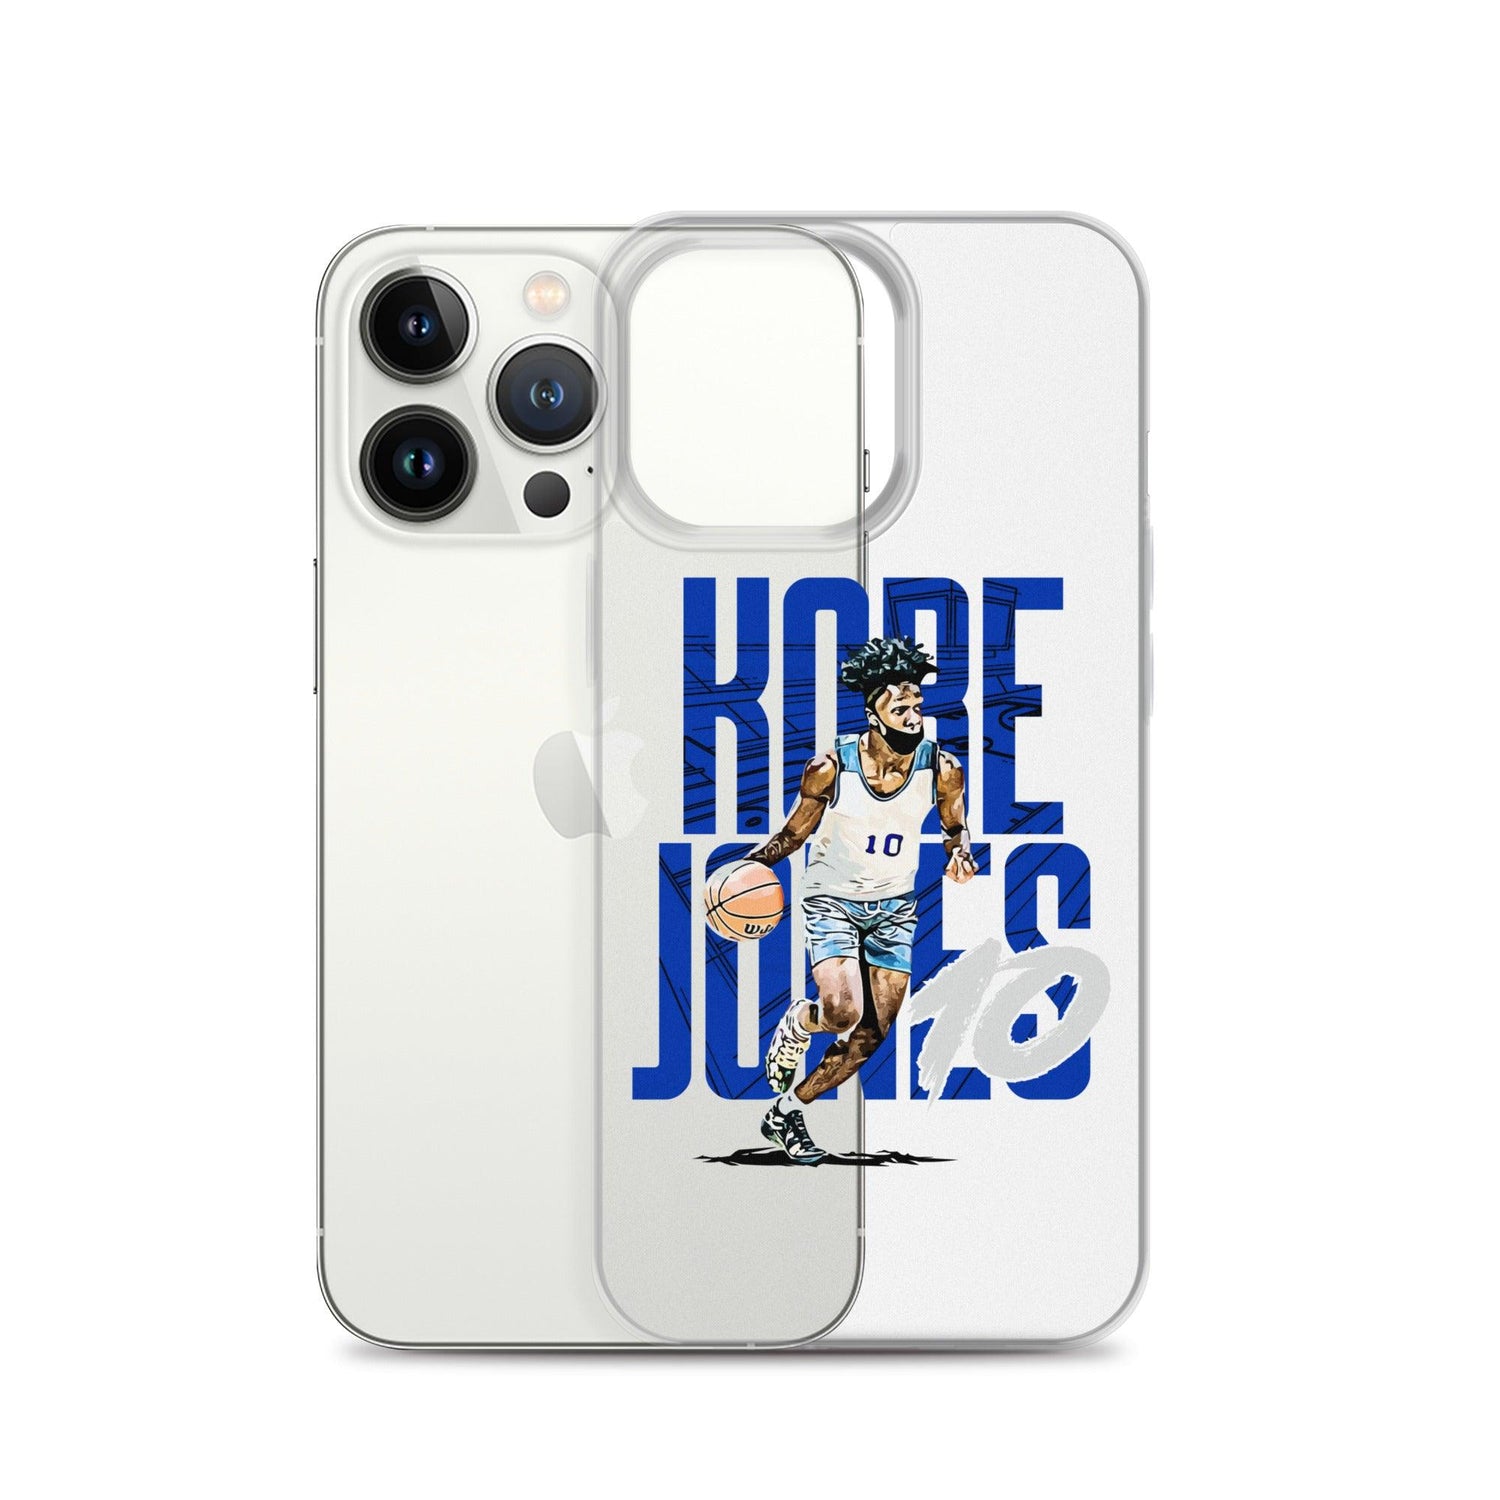 Kobe Jones "Gameday" iPhone Case - Fan Arch